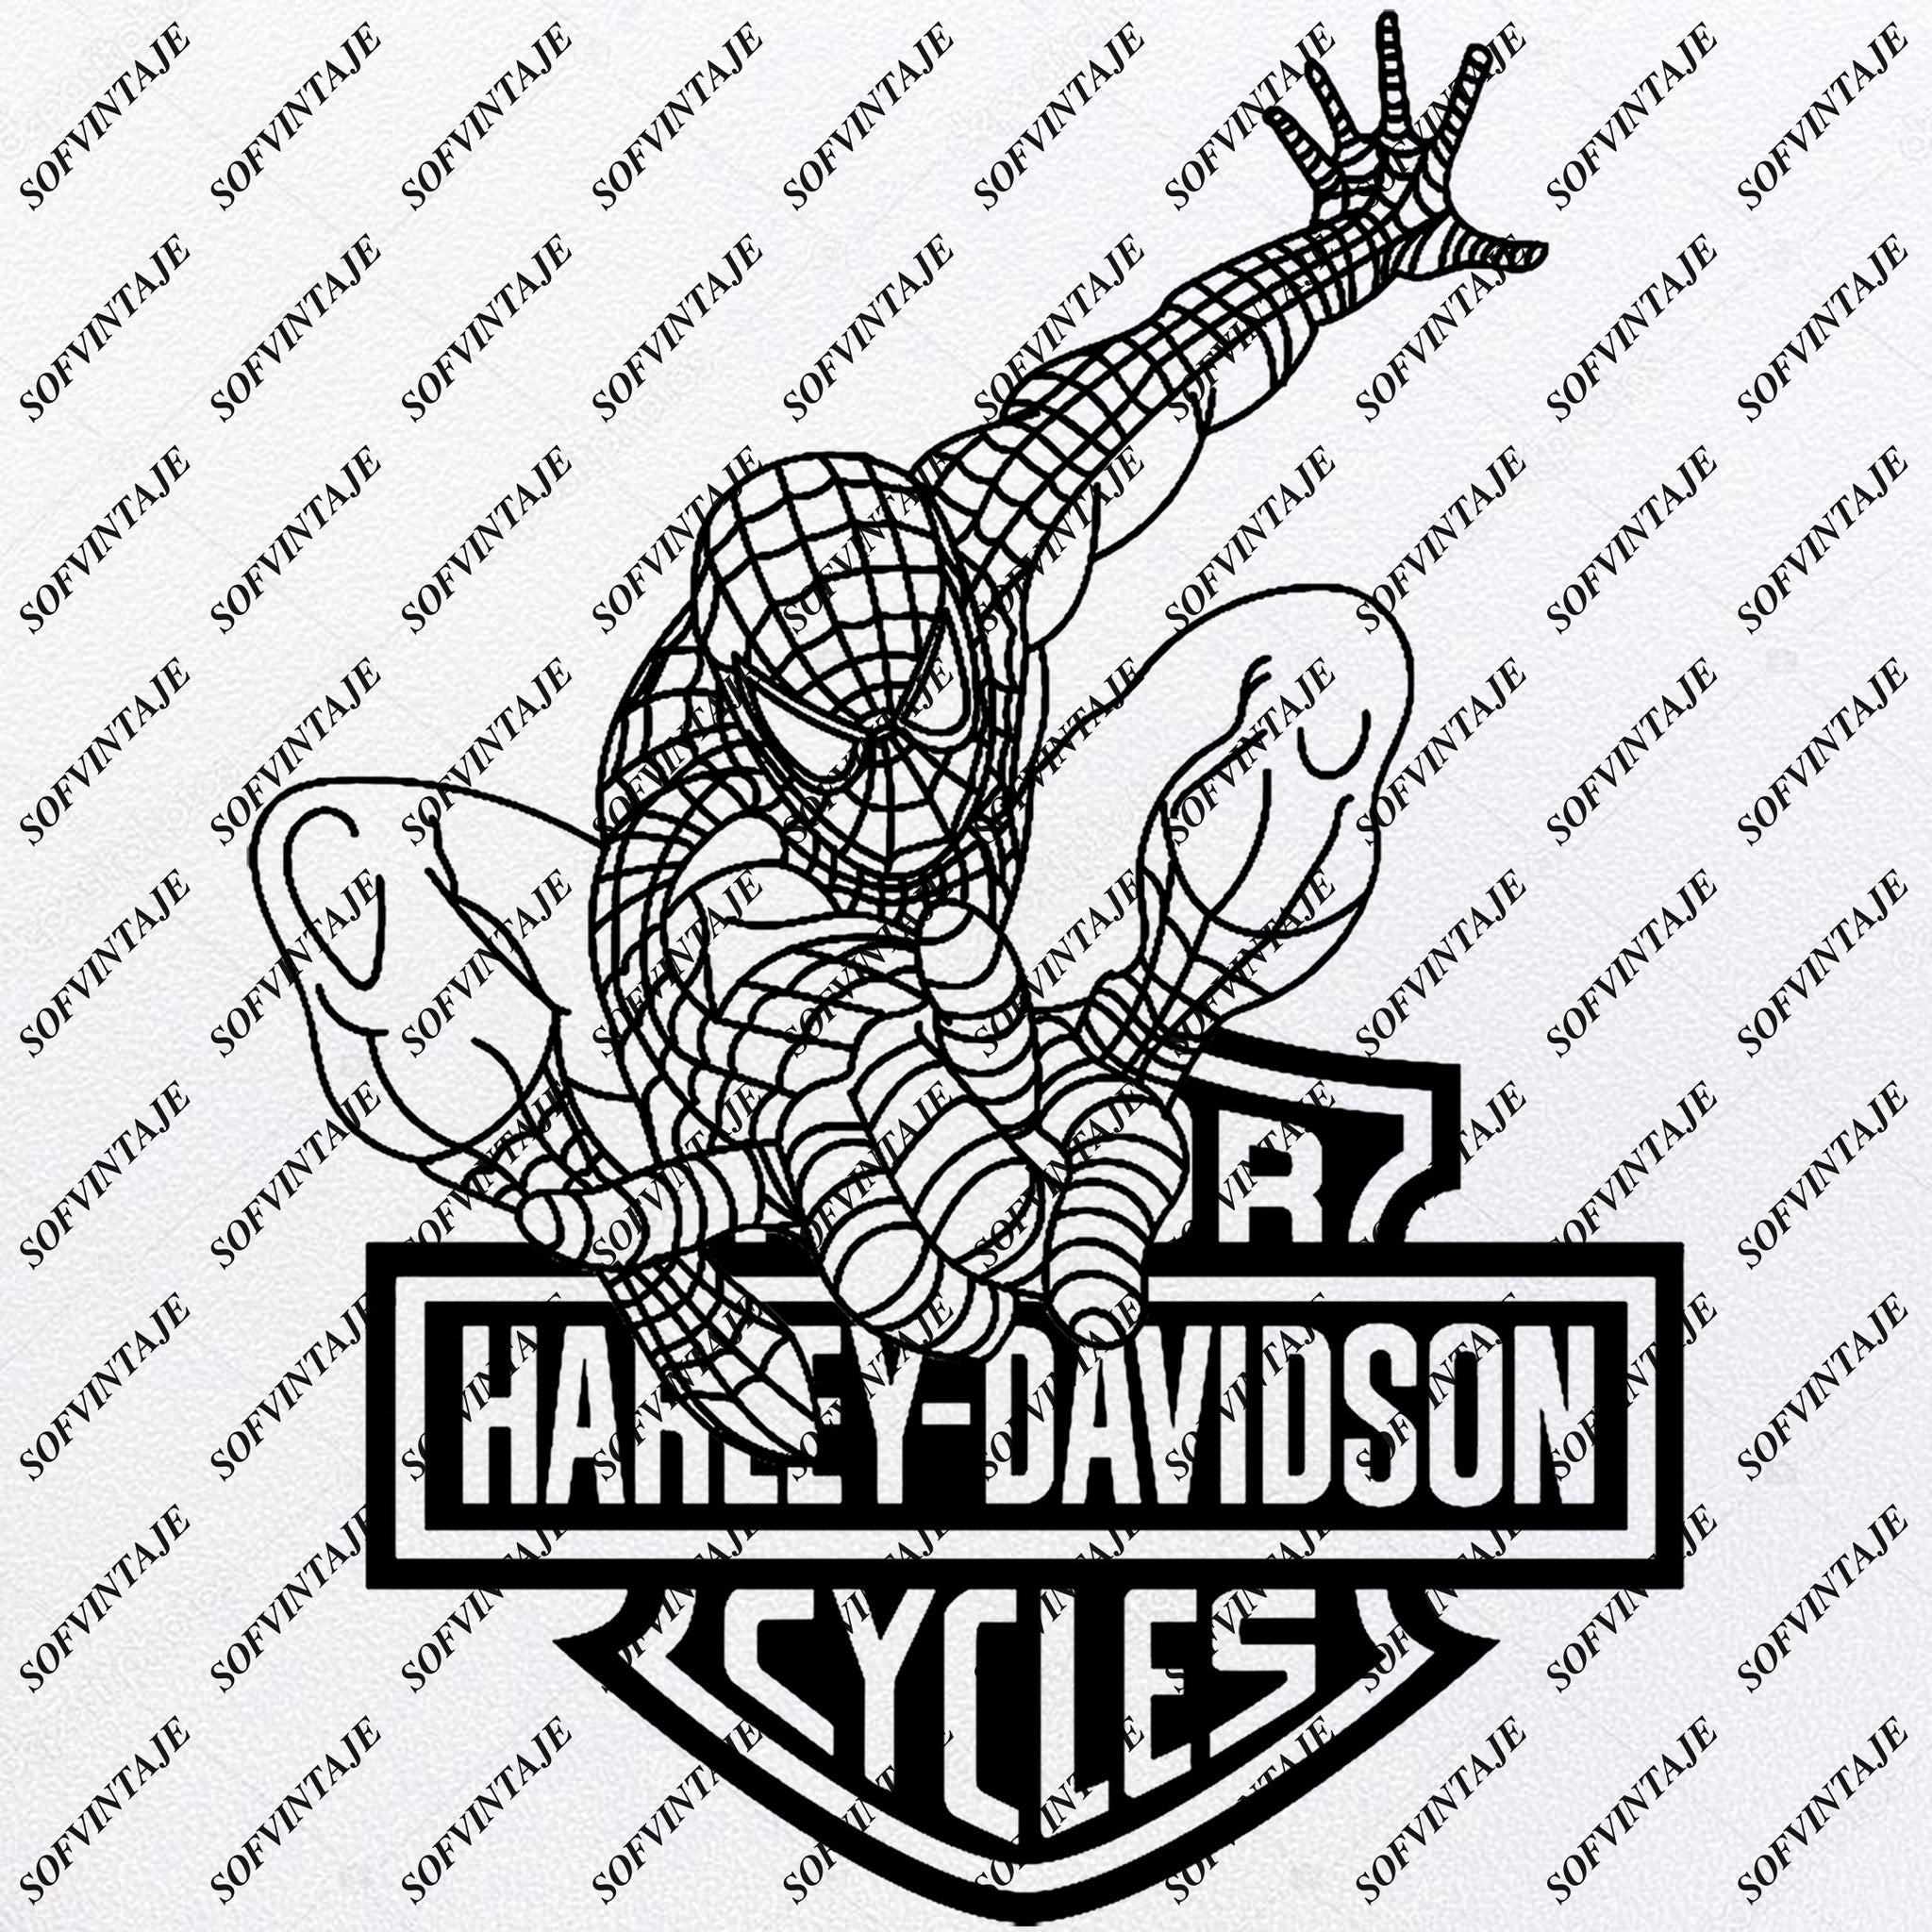 Download Spiderman Harley Davidson Spiderman Svg File Spiderman Harley Sofvintaje SVG, PNG, EPS, DXF File